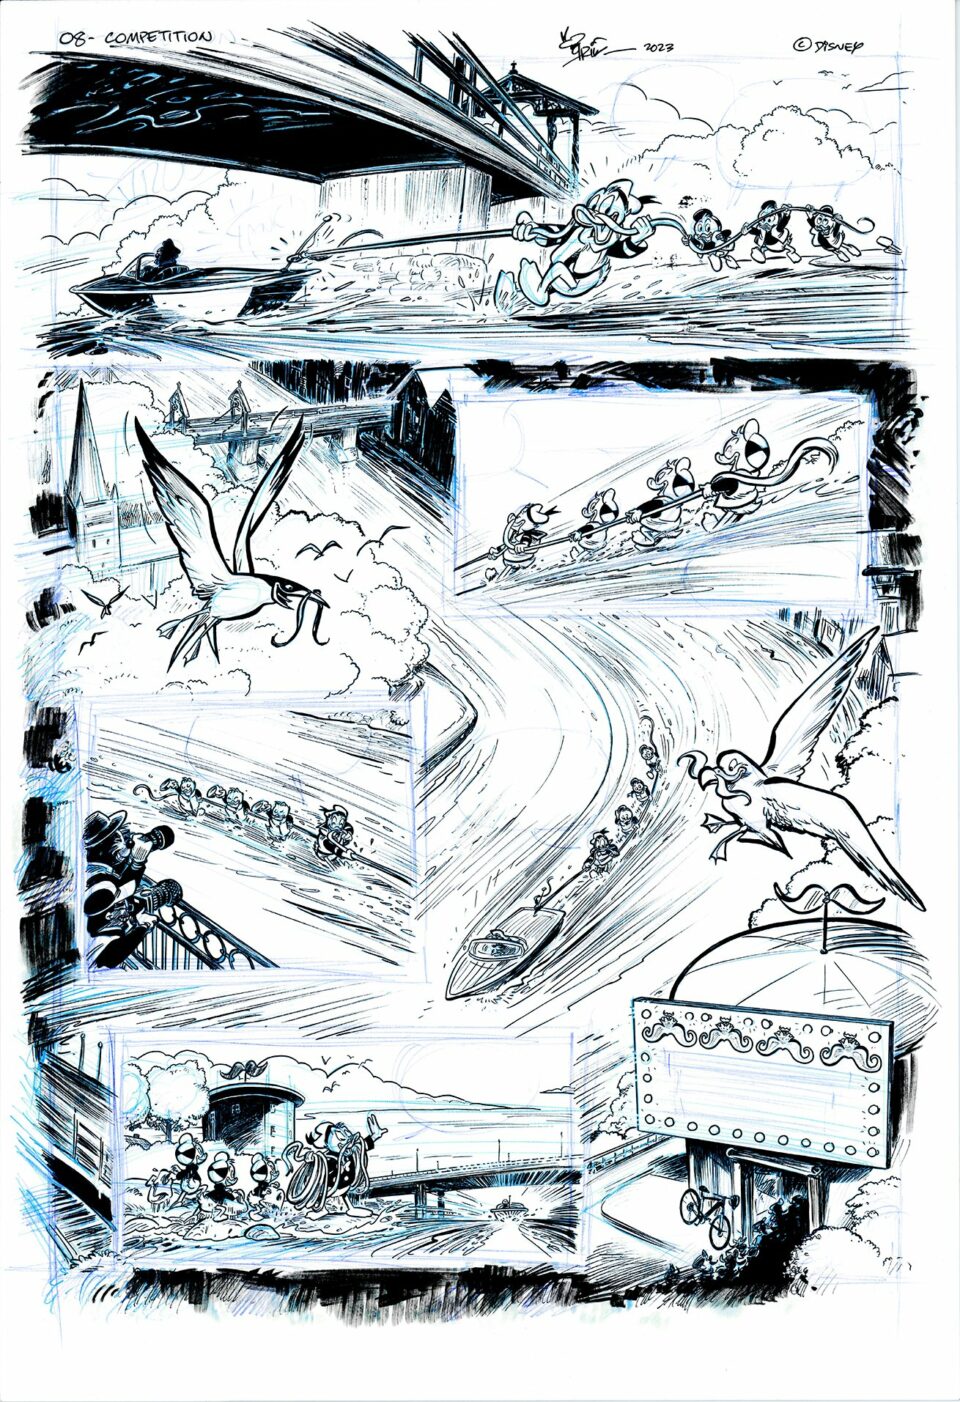 Tegneserieside som viser et dynamisk løp med karakterer i høyhastighetsbevegelse, flygende maskiner og en fugl som sveiper over en bro og en veibane.